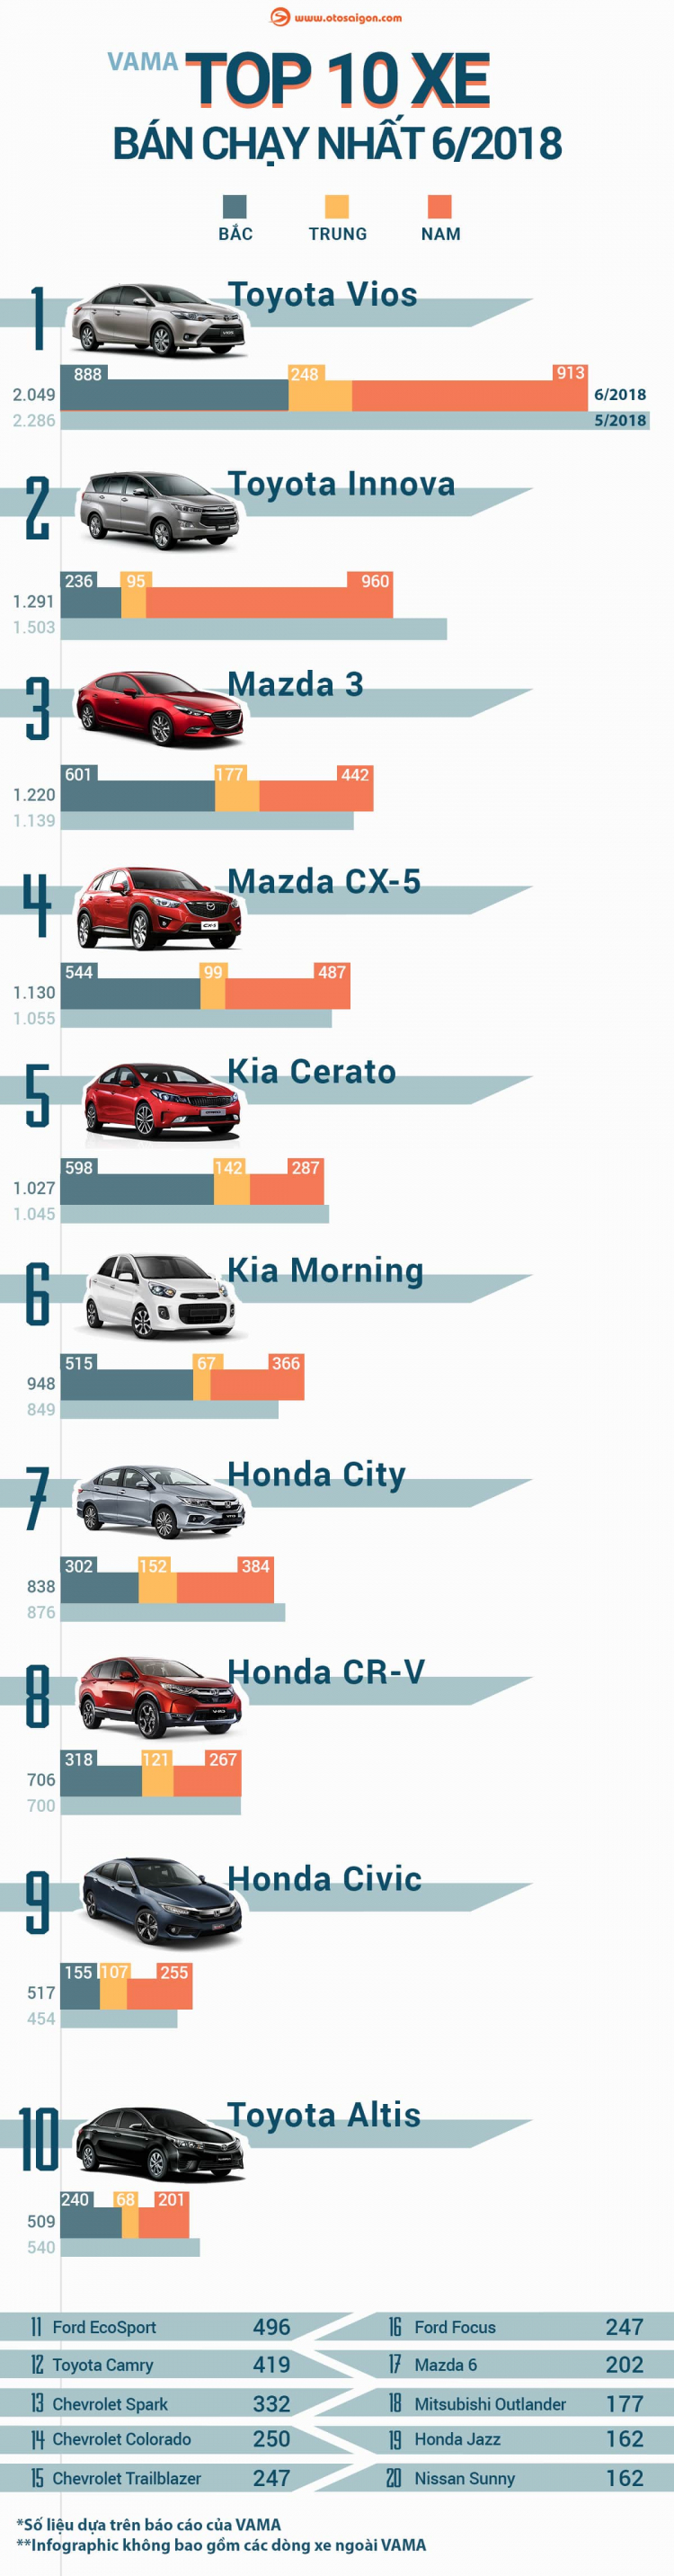 [Infographic] Top 10 xe bán chạy nhất tháng 6/2018